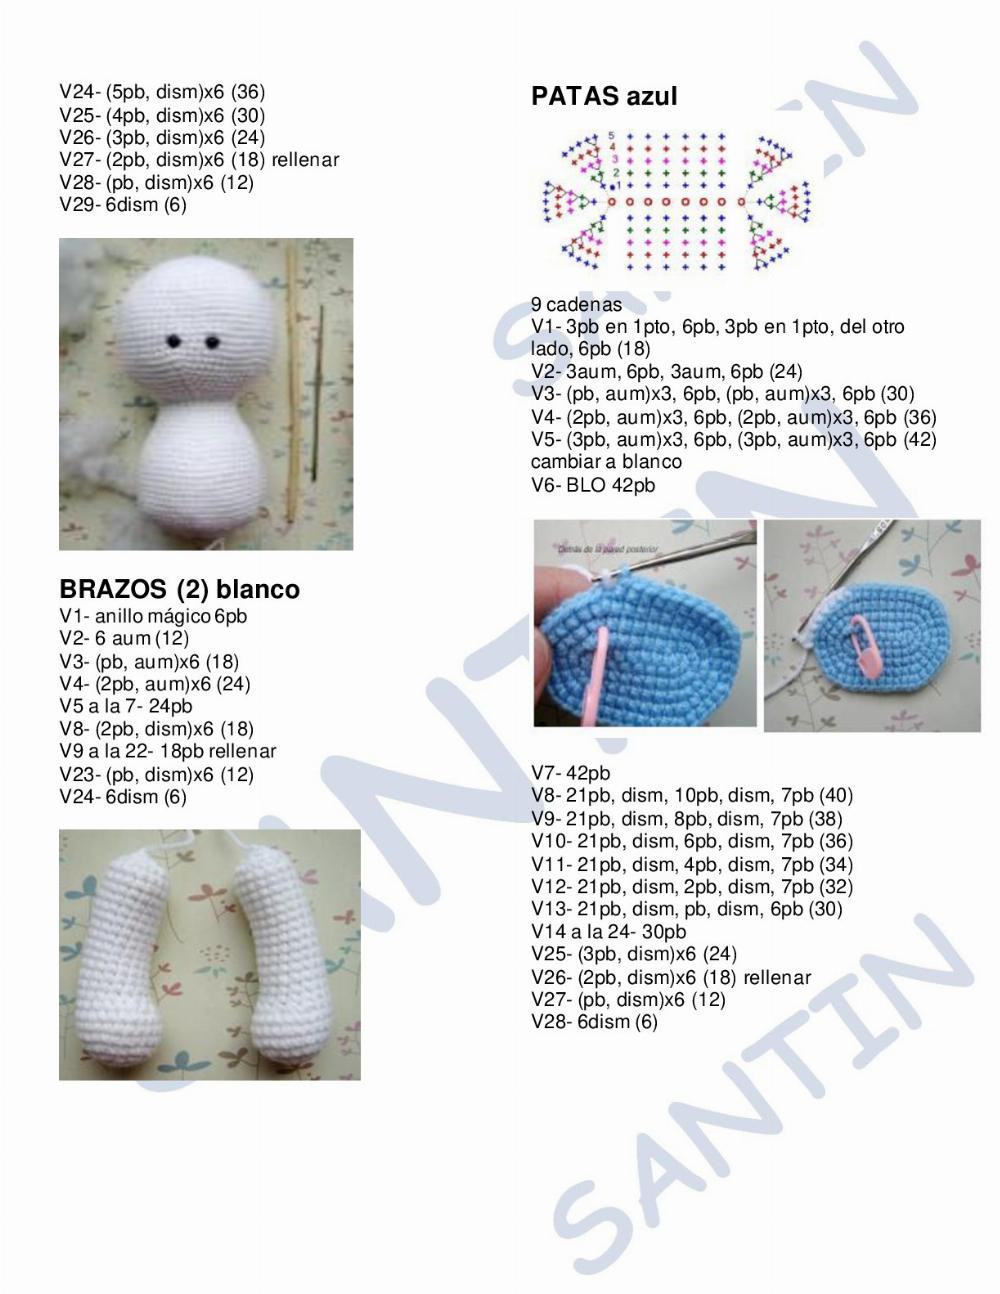 oso white bear crochet pattern